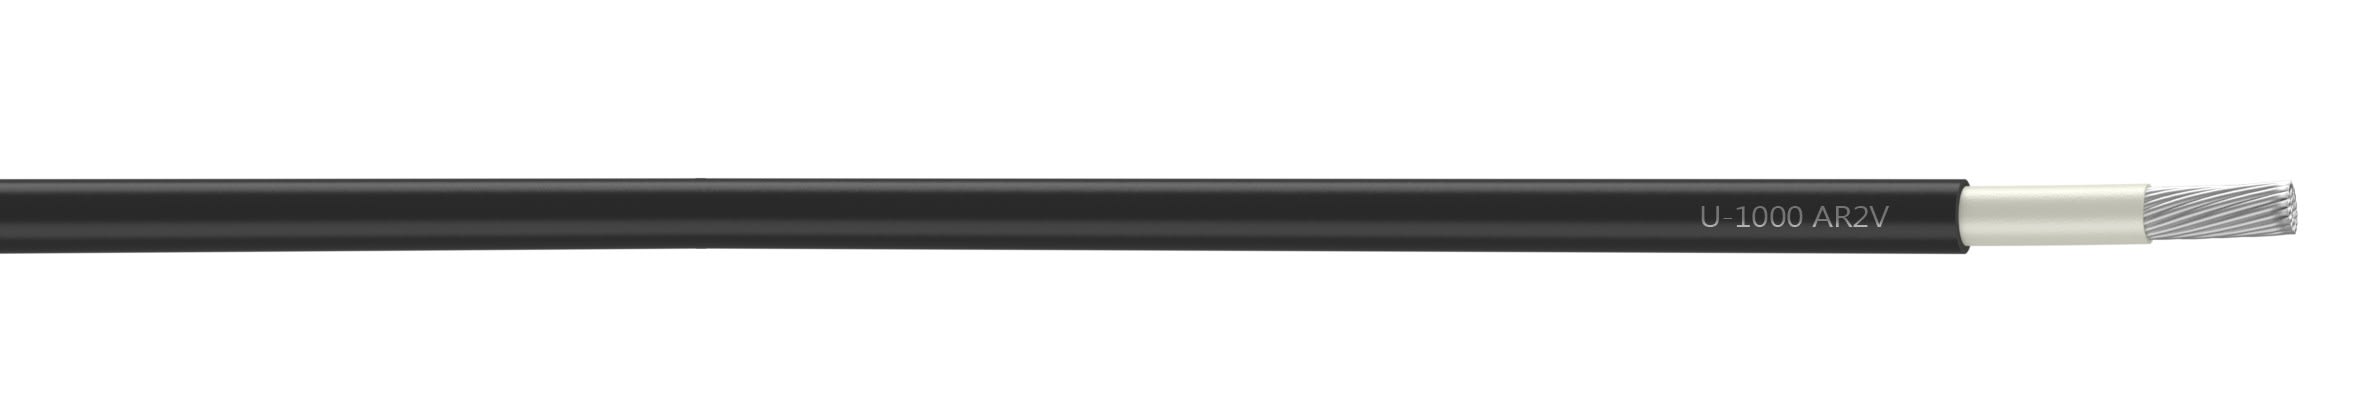 Nexans - Câble rigide U-1000 AR2V aluminium 1x185 longueur à la coupe